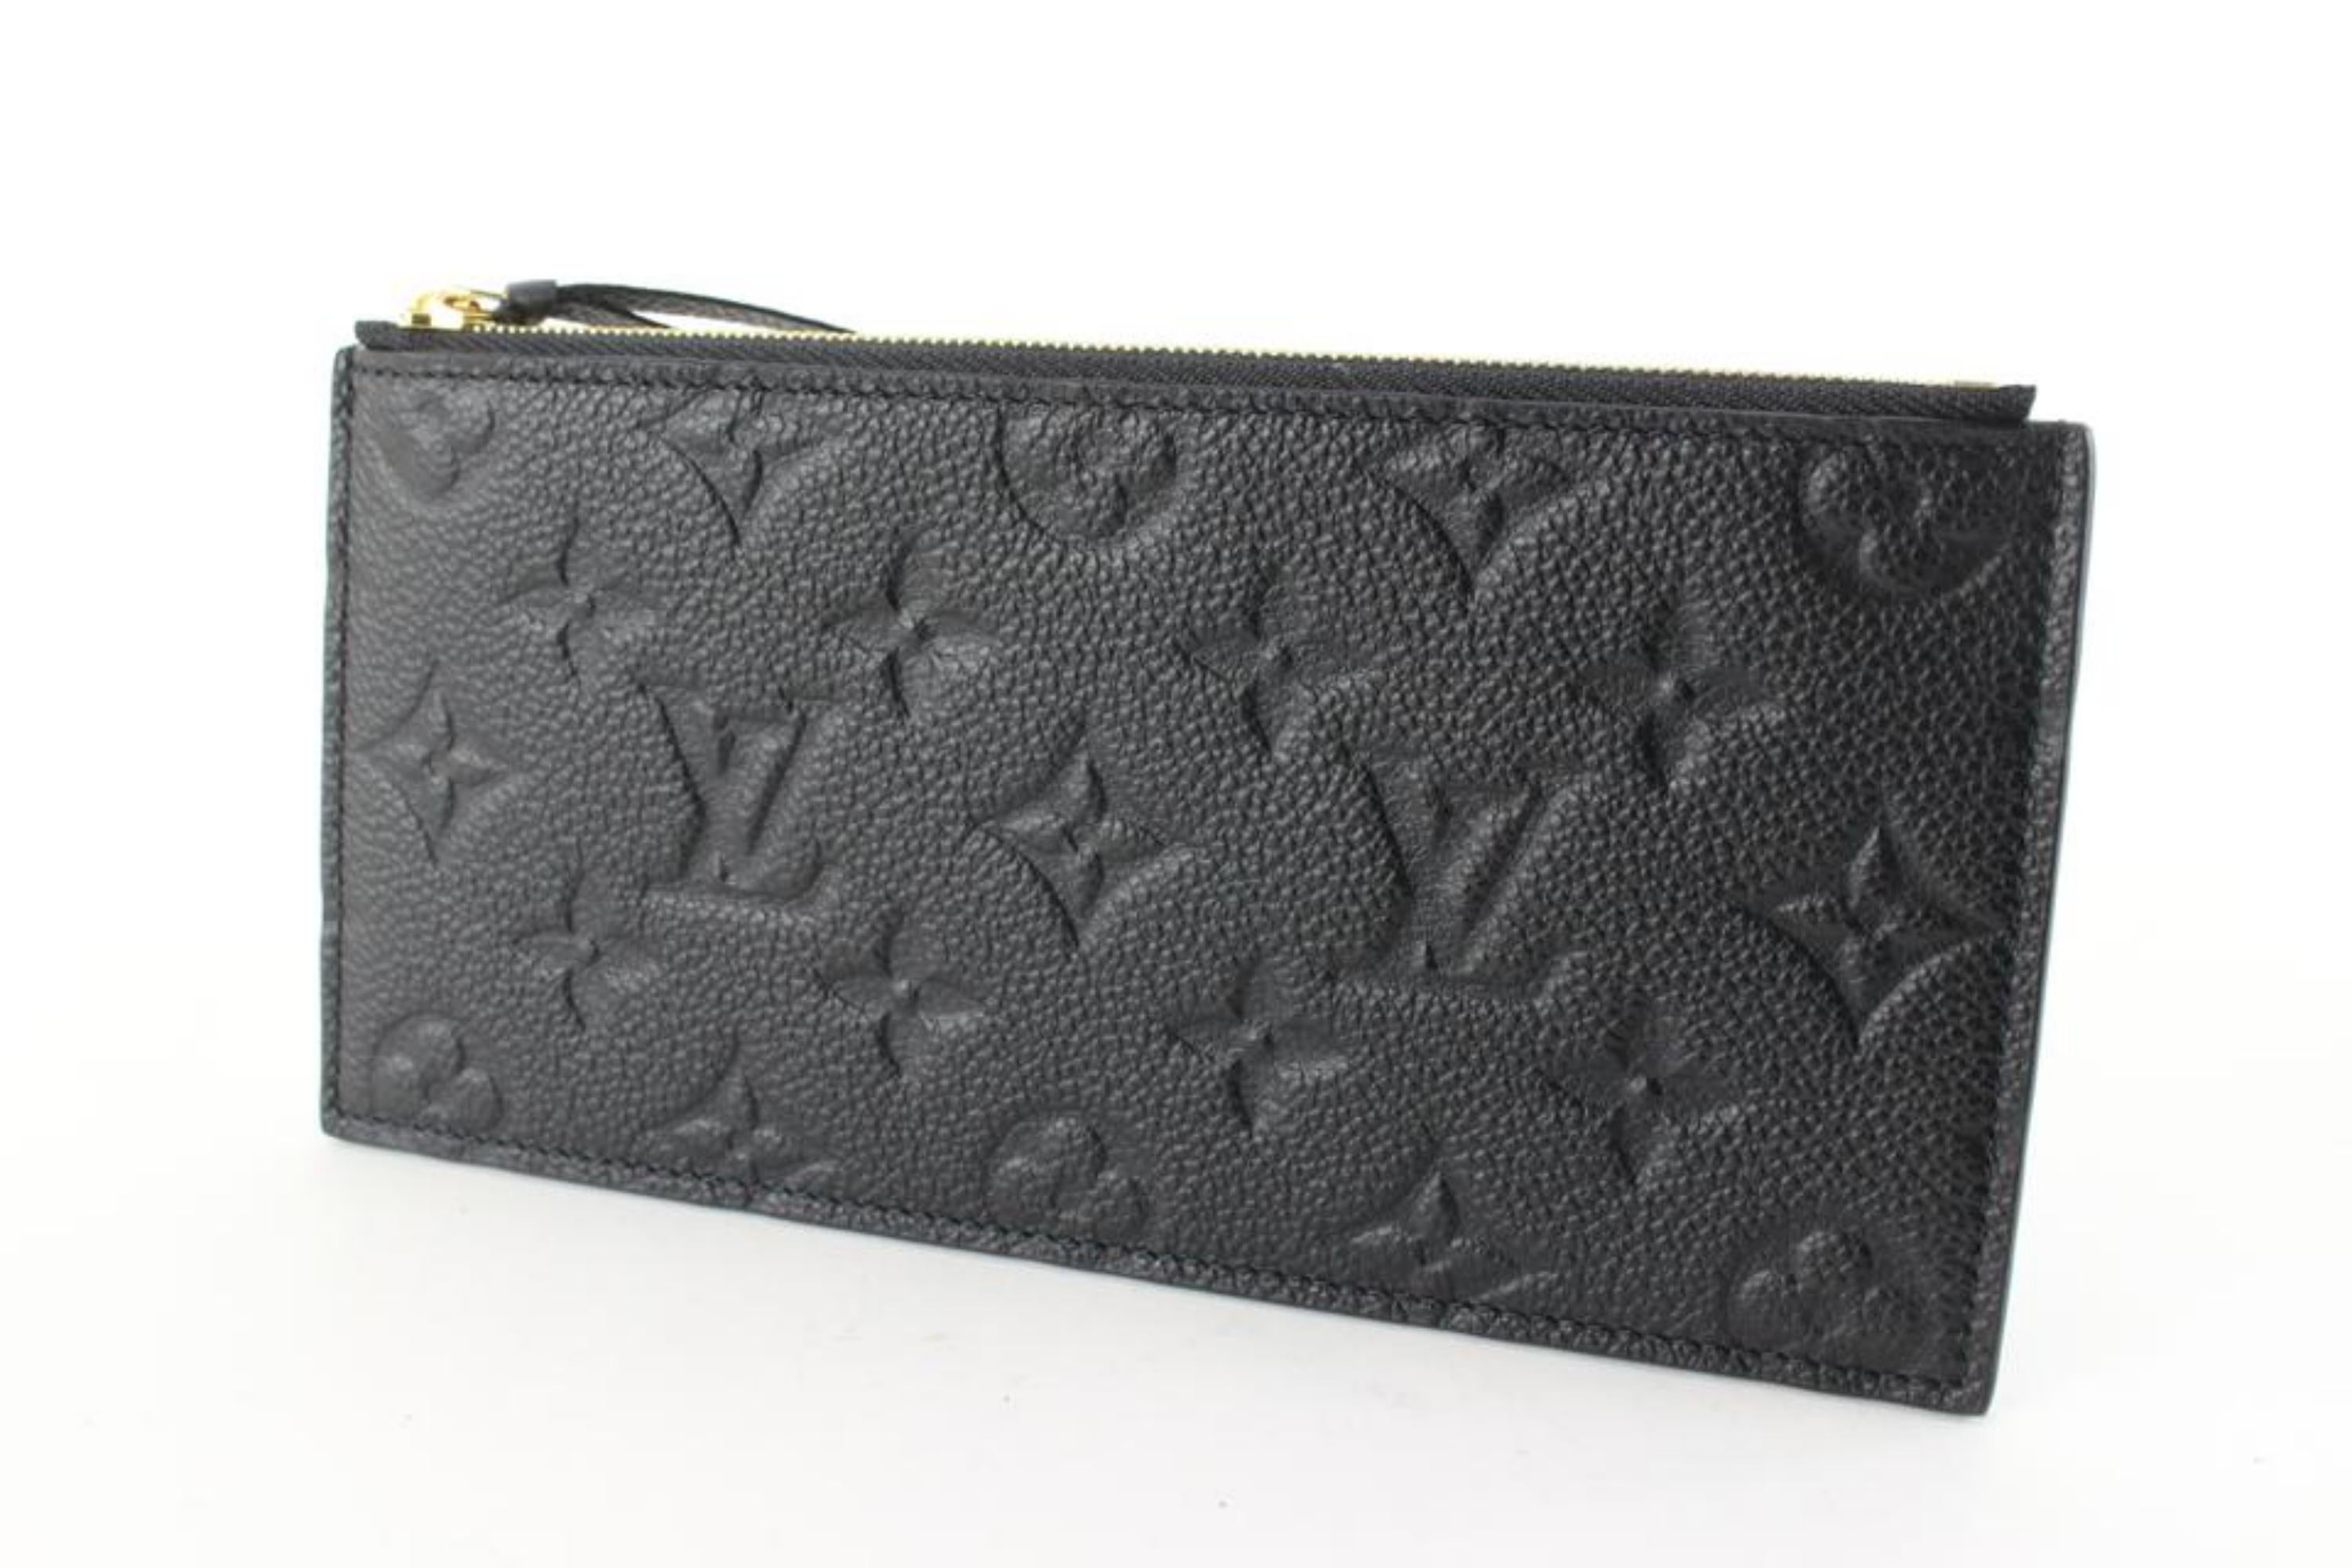 Louis Vuitton Black Leather Monogram Empreinte Felicie Zip Pouch Insert 6lk712s 7